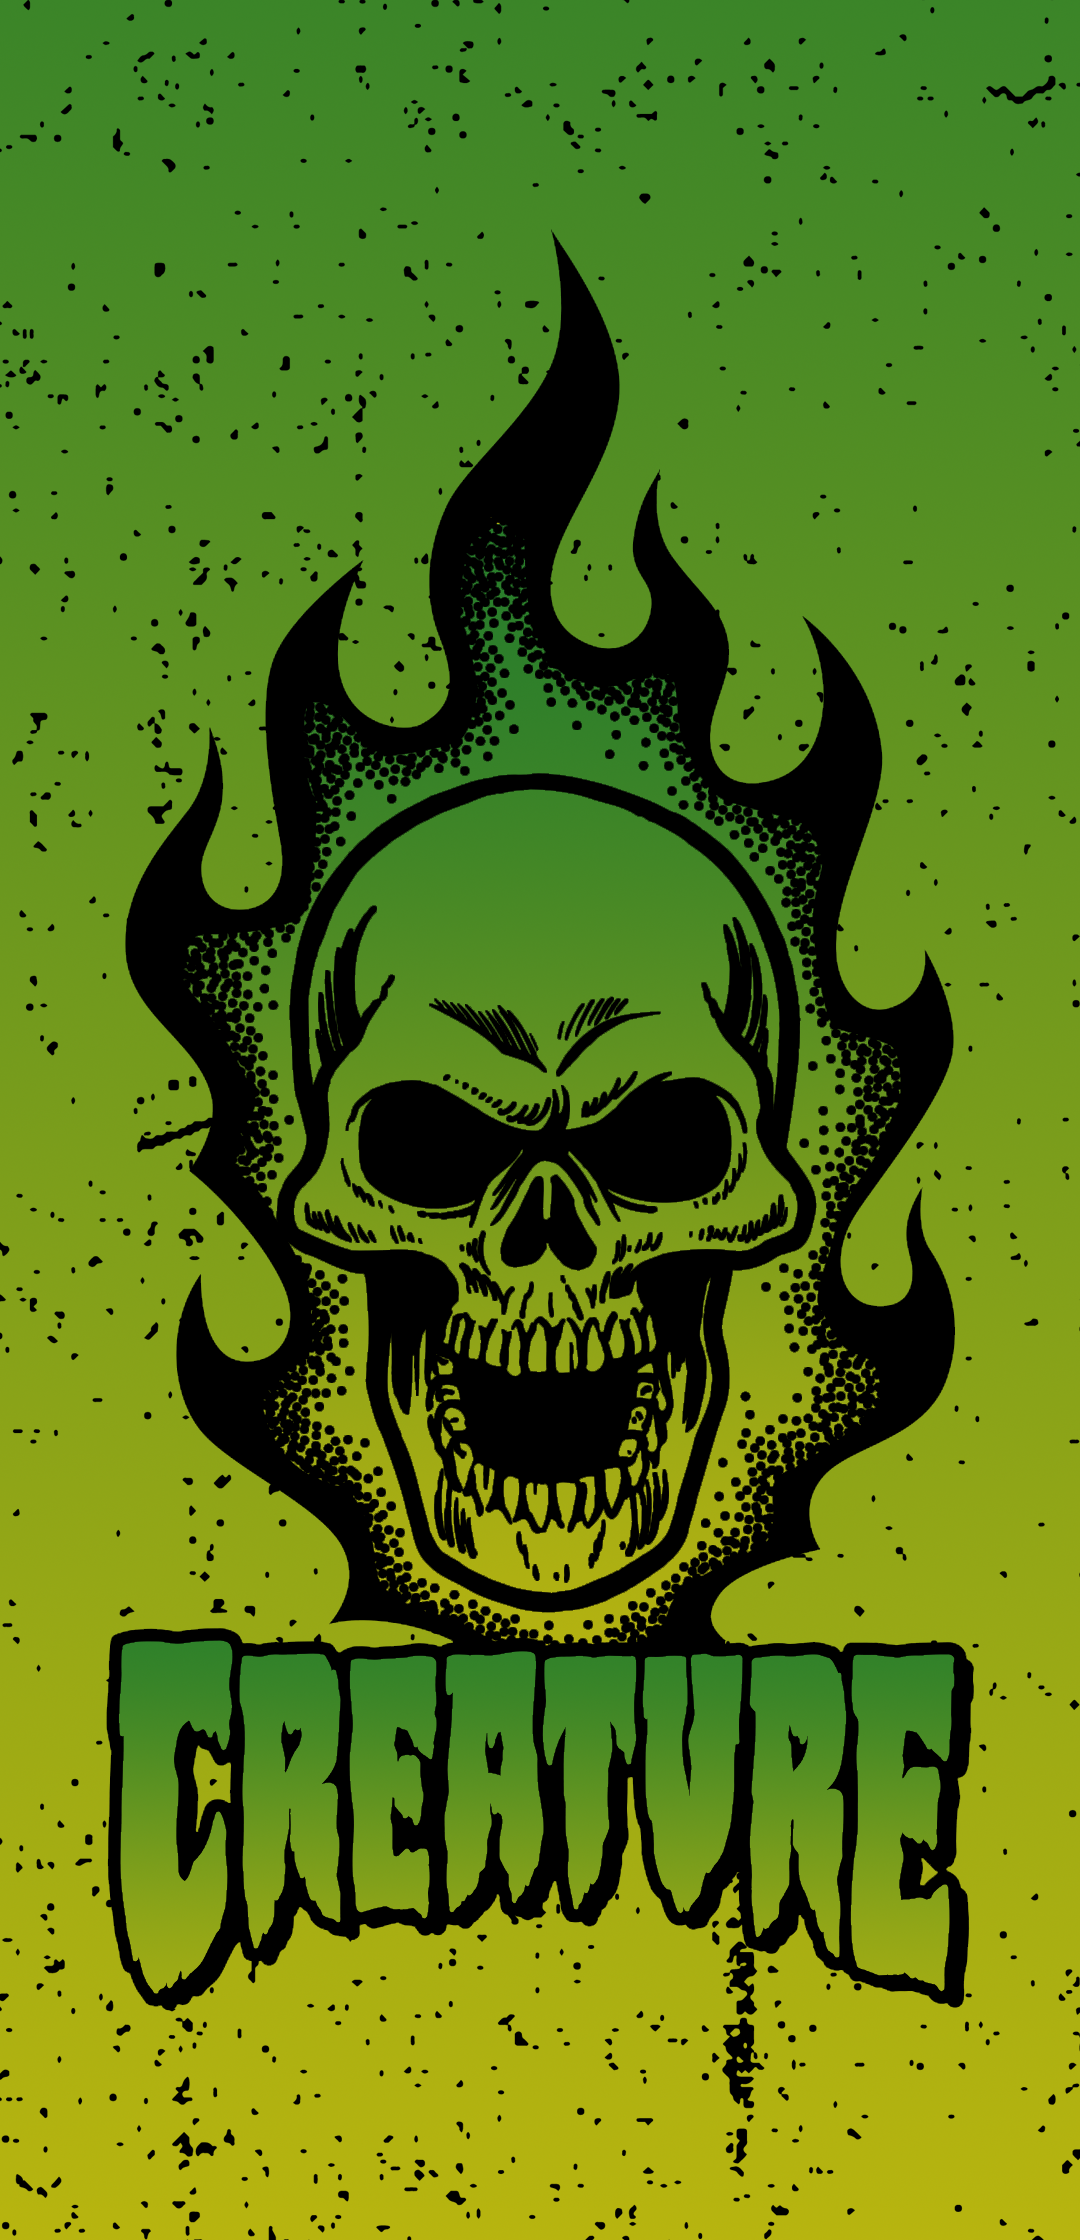 revolution Forvirre Bedøvelsesmiddel Creature skateboards - Bonehead (green) by peshinkovxor on DeviantArt